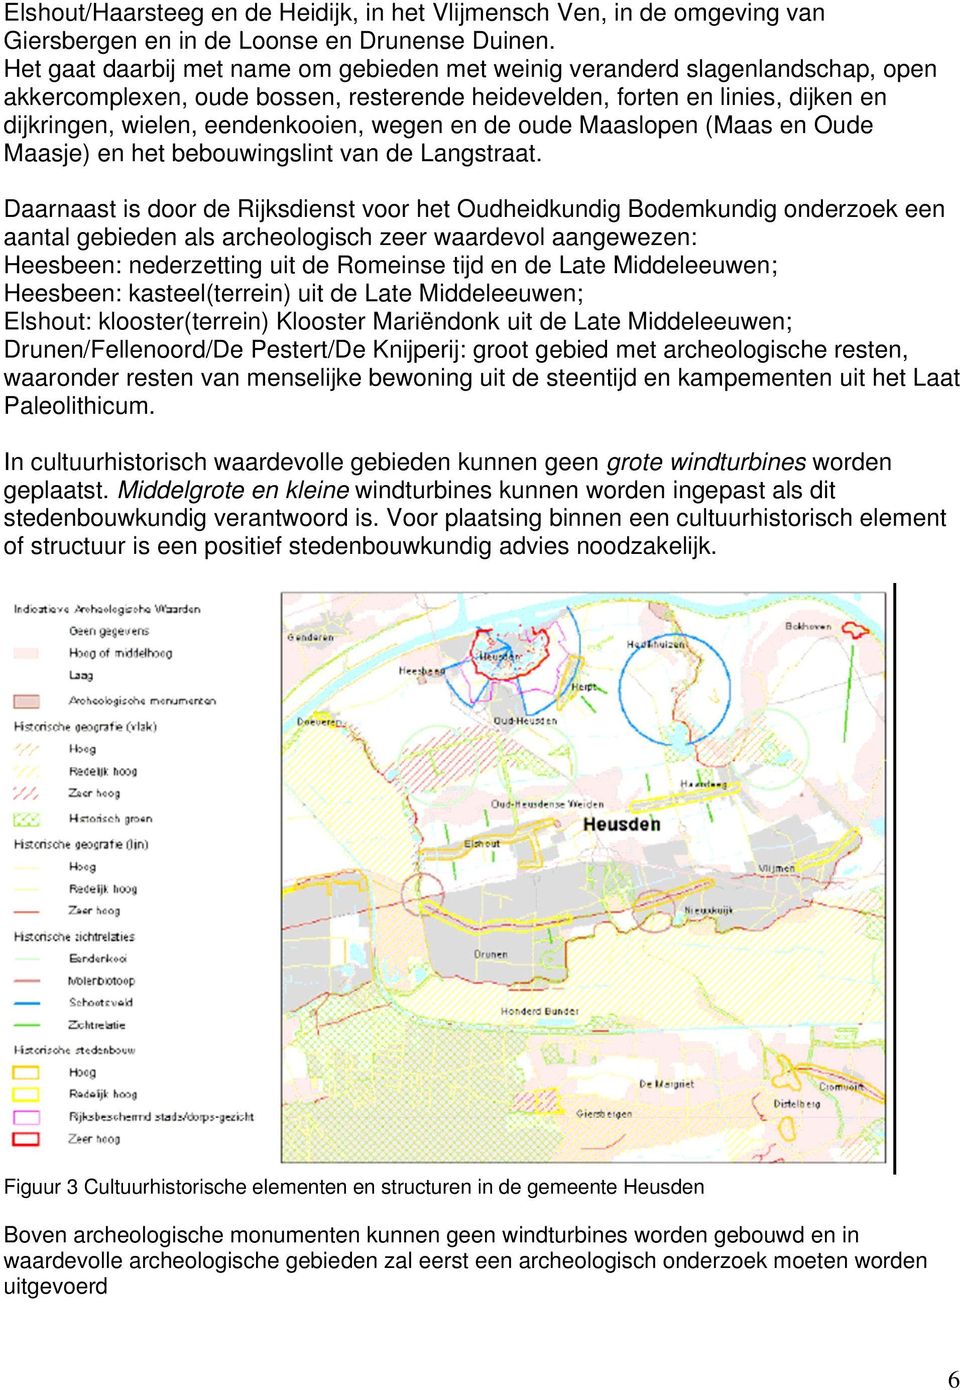 wegen en de oude Maaslopen (Maas en Oude Maasje) en het bebouwingslint van de Langstraat.